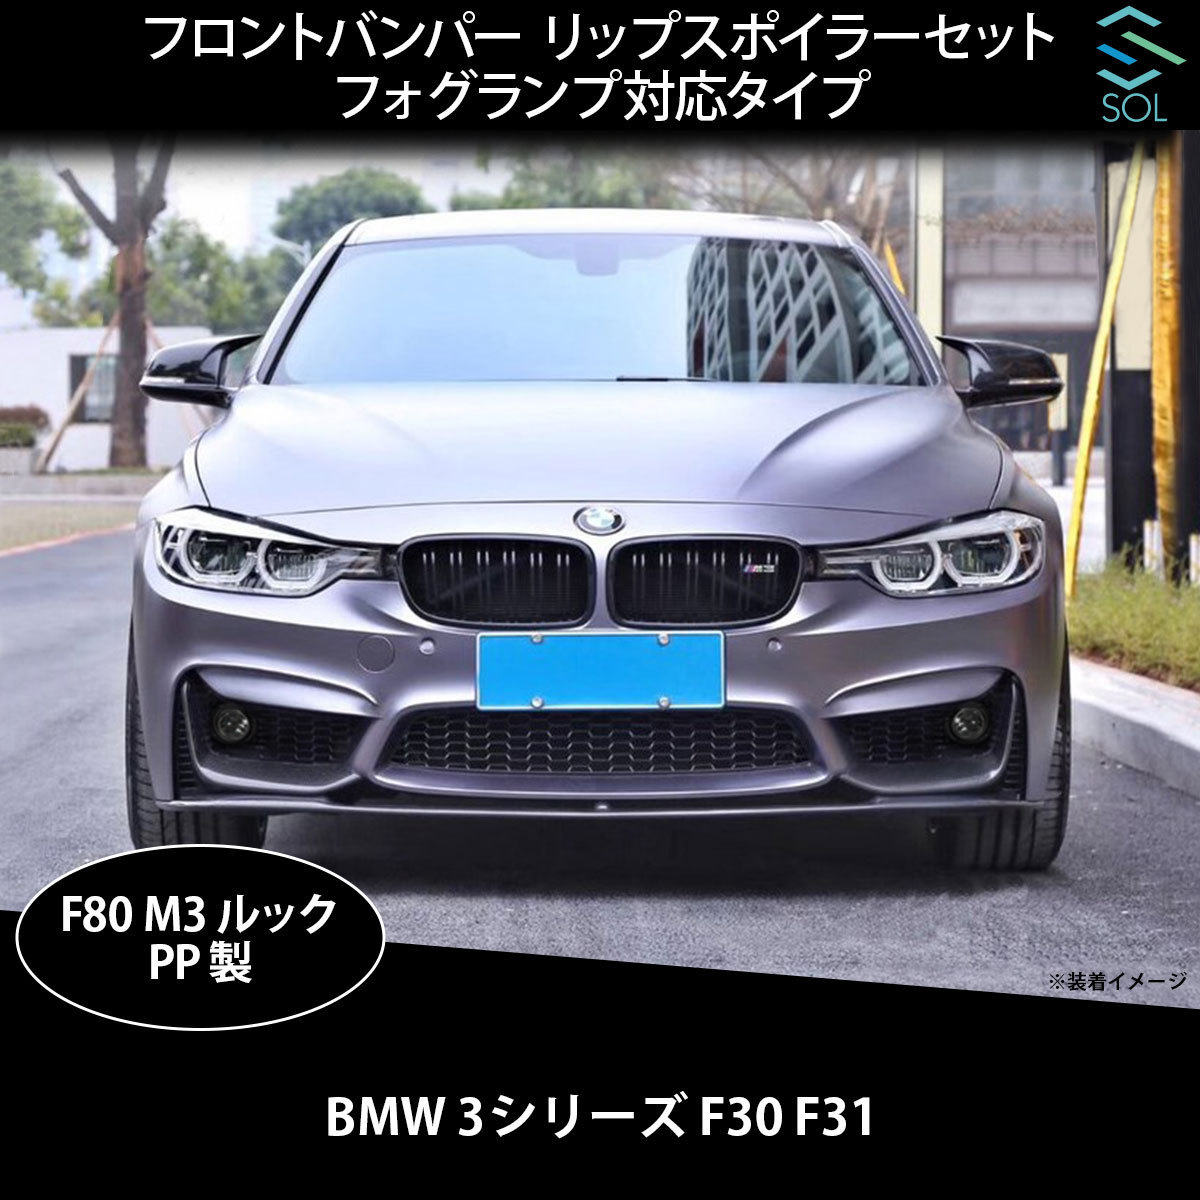 BMW 3シリーズ F30 F31 F80 M3ルック フロントバンパー リップスポイラーセット フォグランプ対応タイプ PDCセンサー穴有 ウォッシャー穴有_画像1